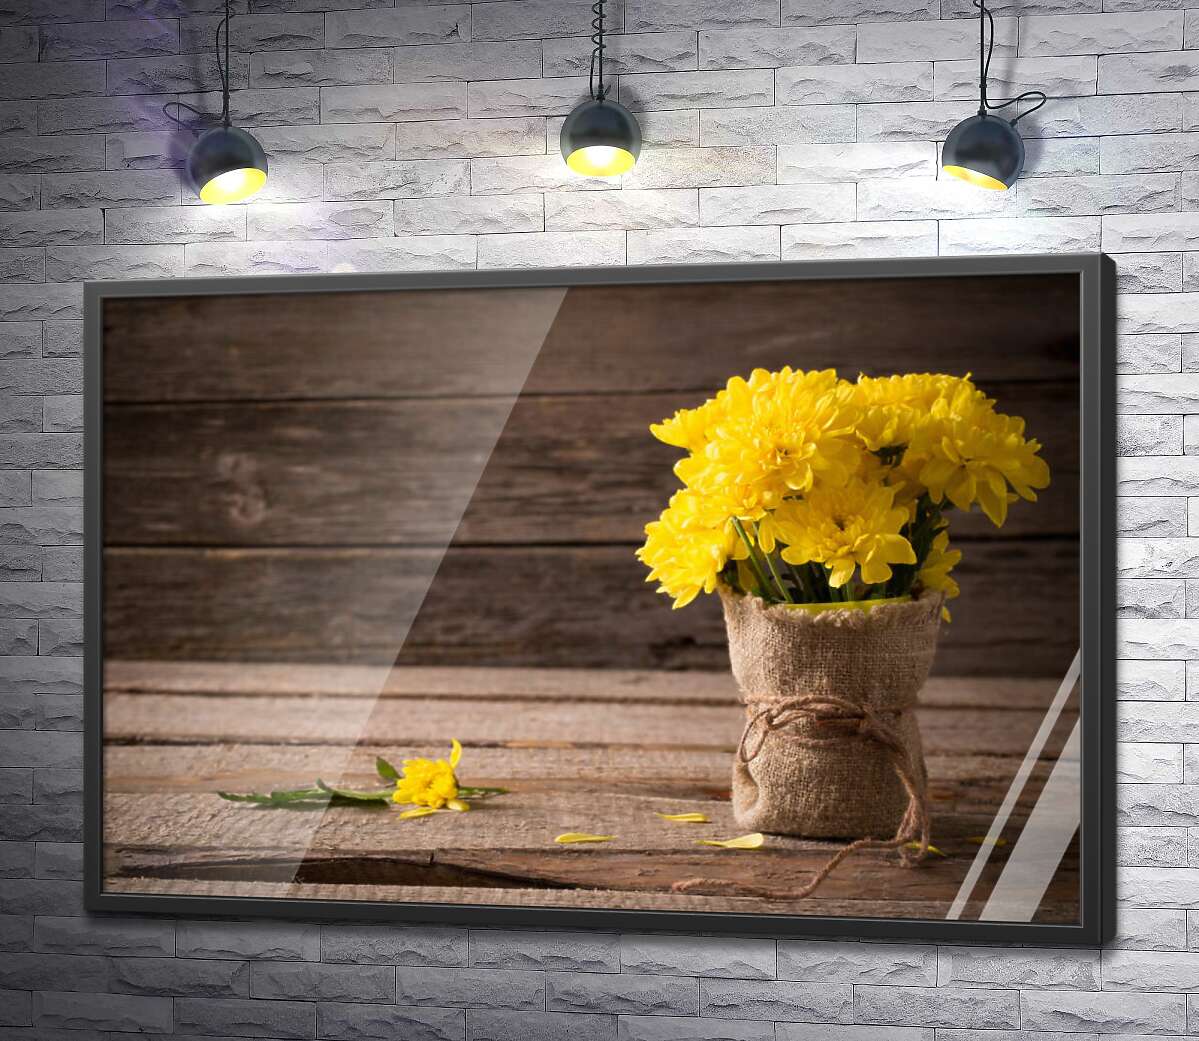 постер Нарядный мешочек желтых хризантем